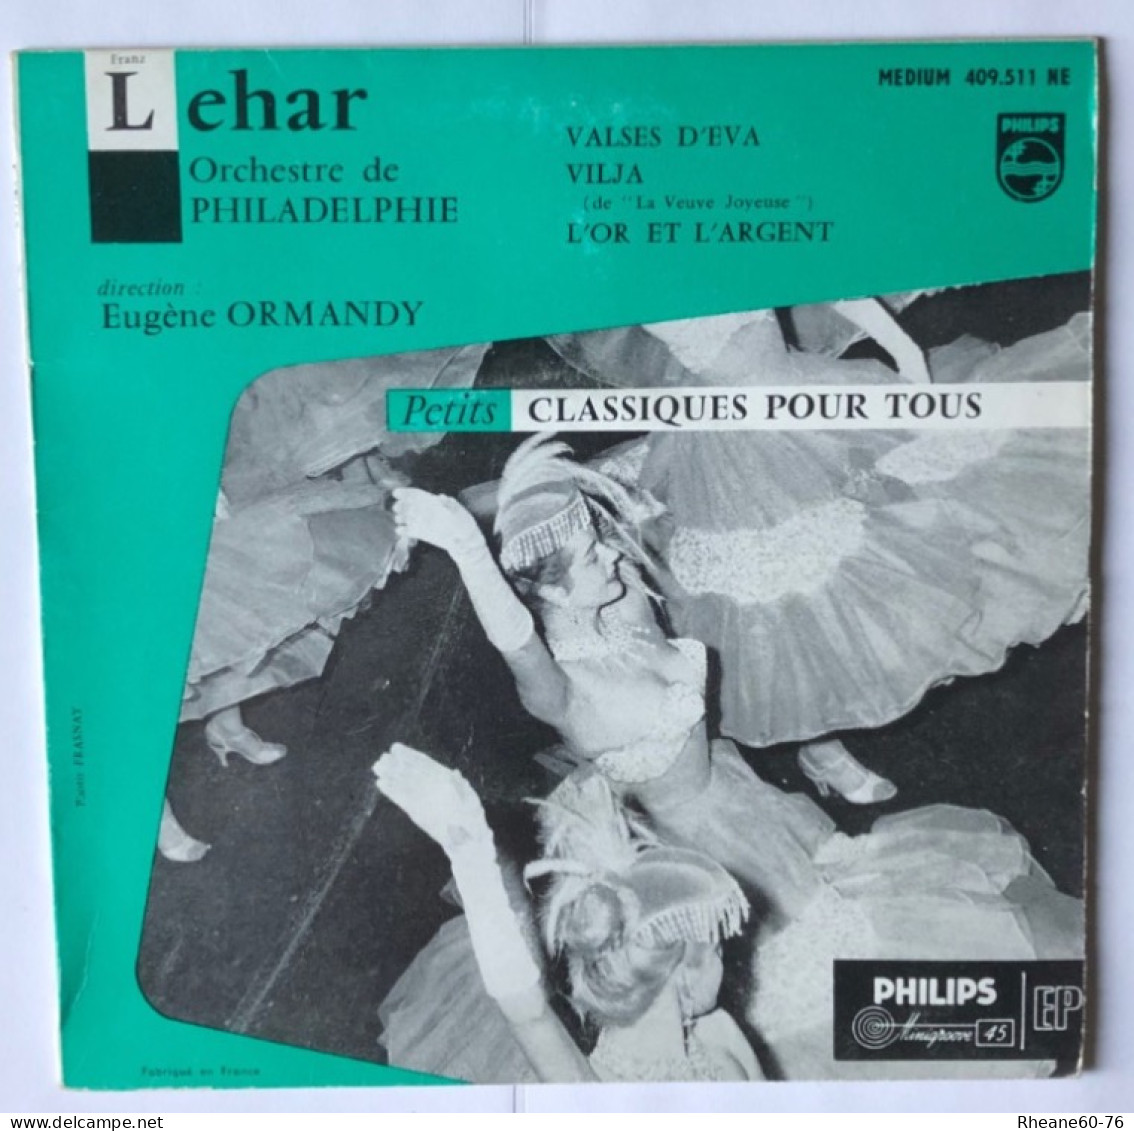 Philips 409.511 NE - 45T EP - Lehar - Orchestre De Philadelphie Direction Eugène Ormandy - Formats Spéciaux